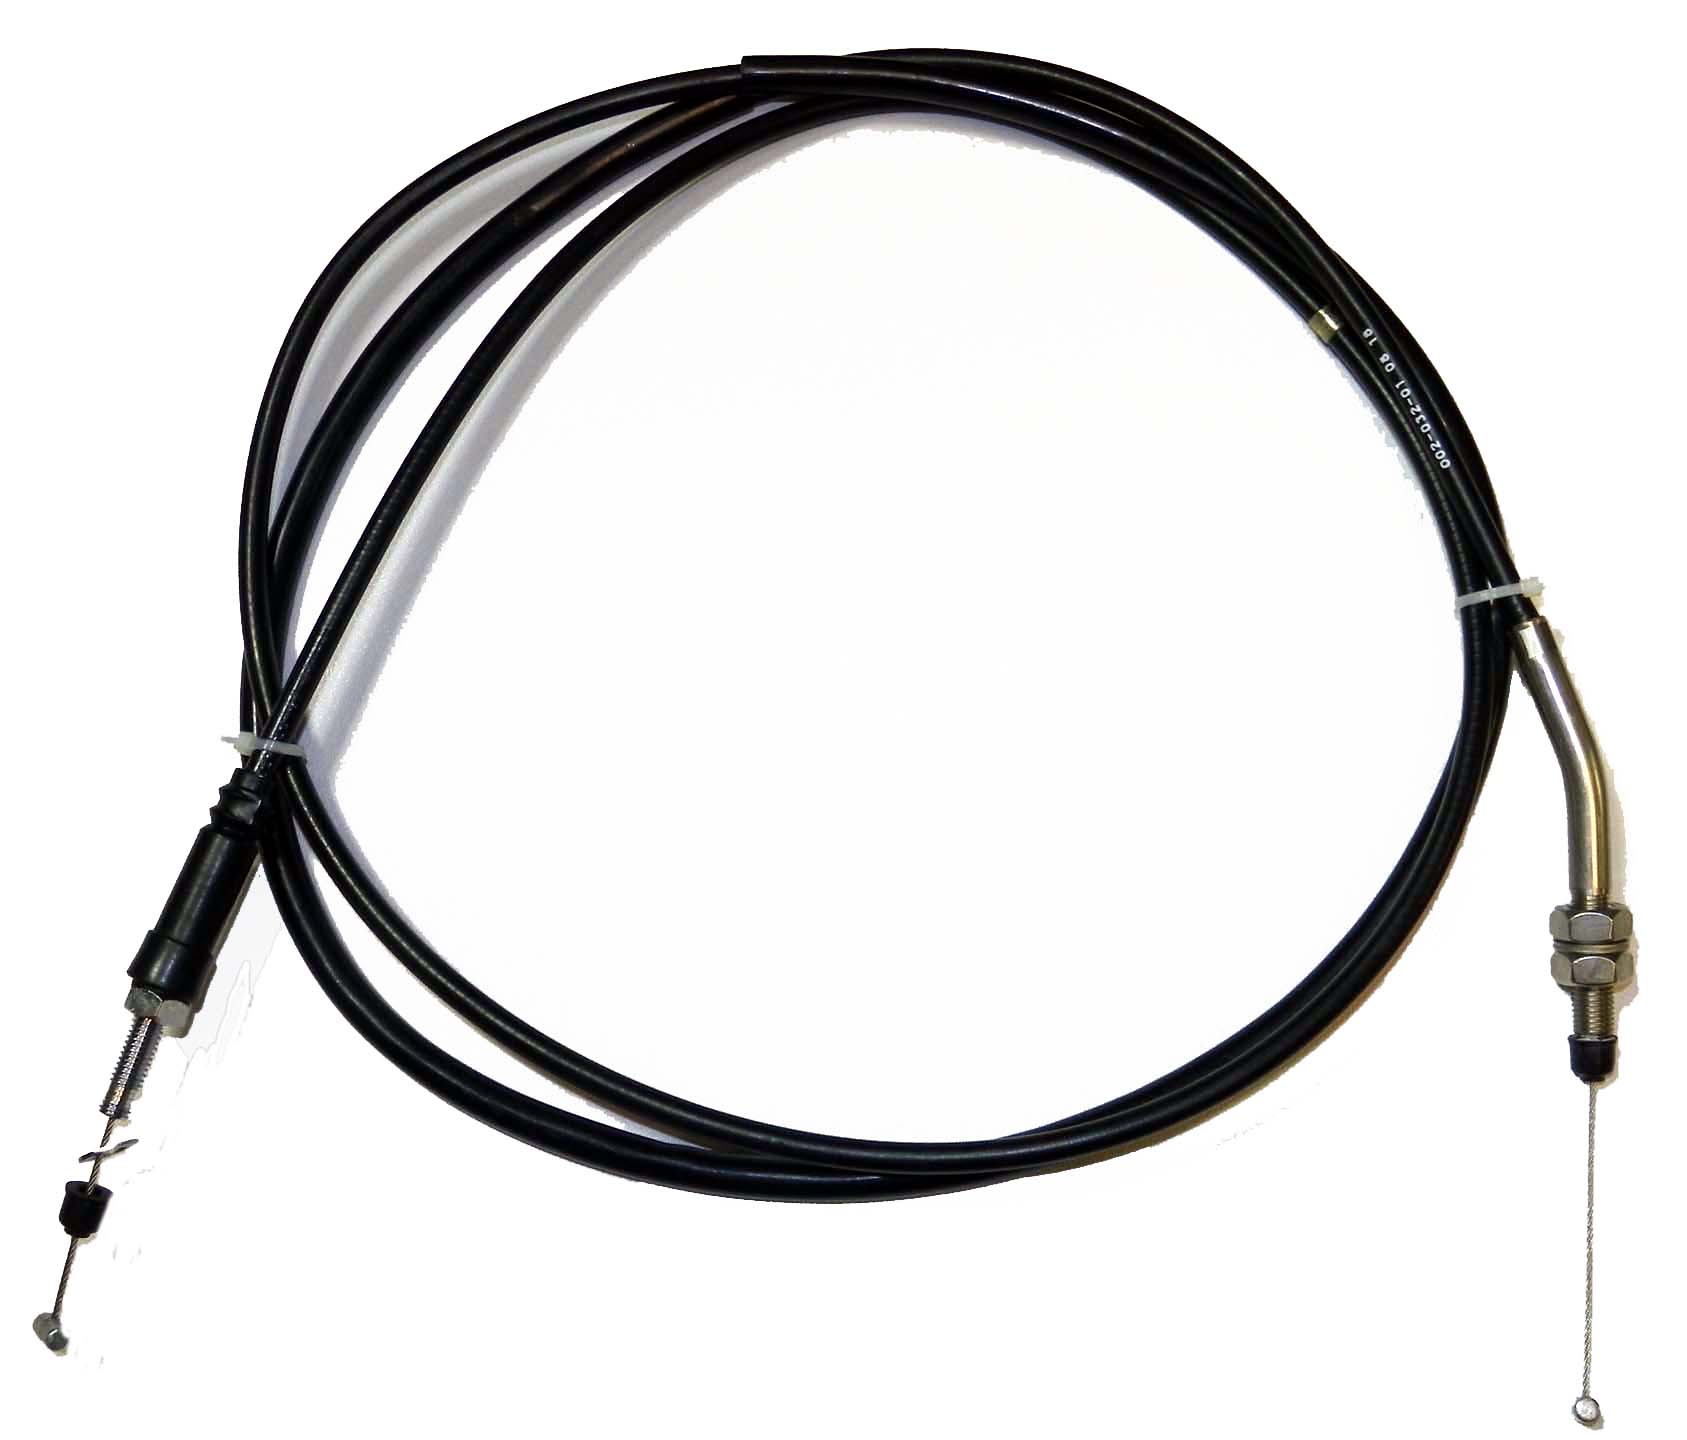 Throttle Cable - Kawasaki PWC (540123747/540123754) - Click Image to Close